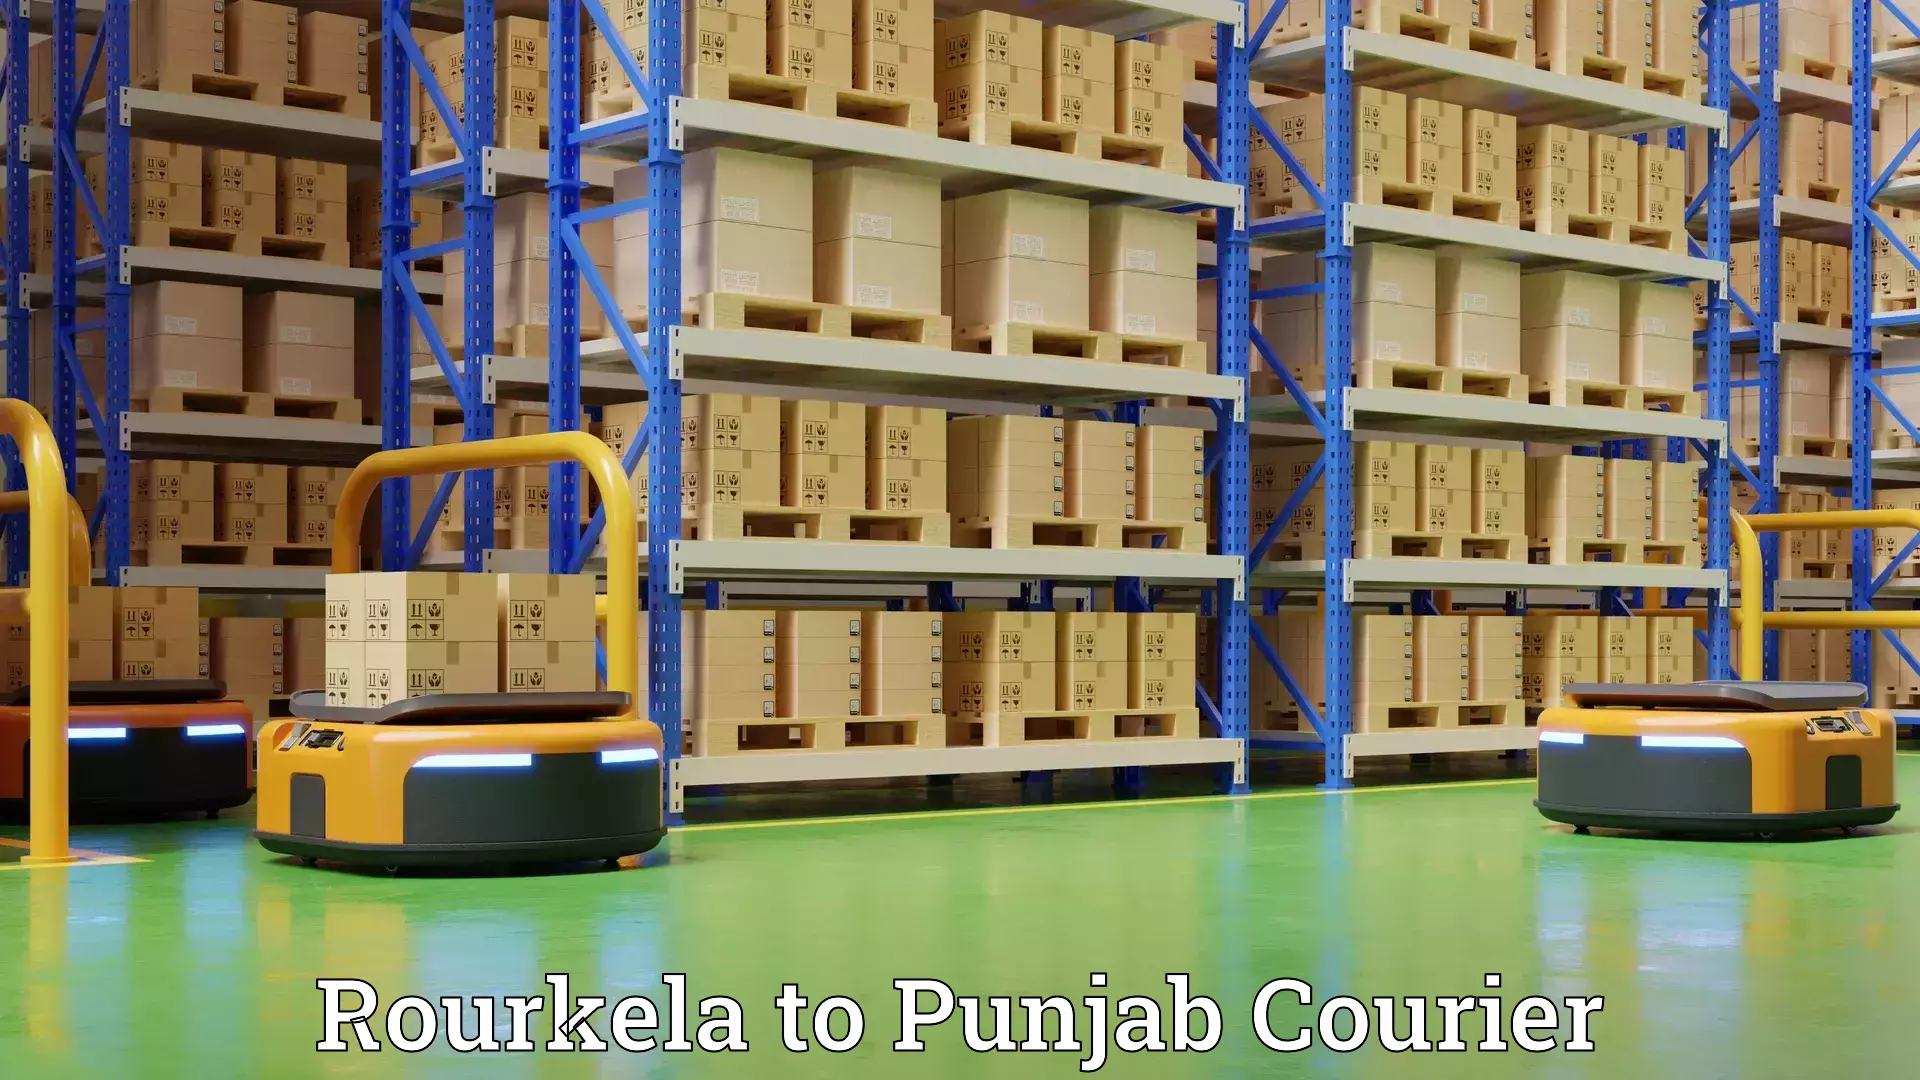 Furniture moving experts in Rourkela to Punjab